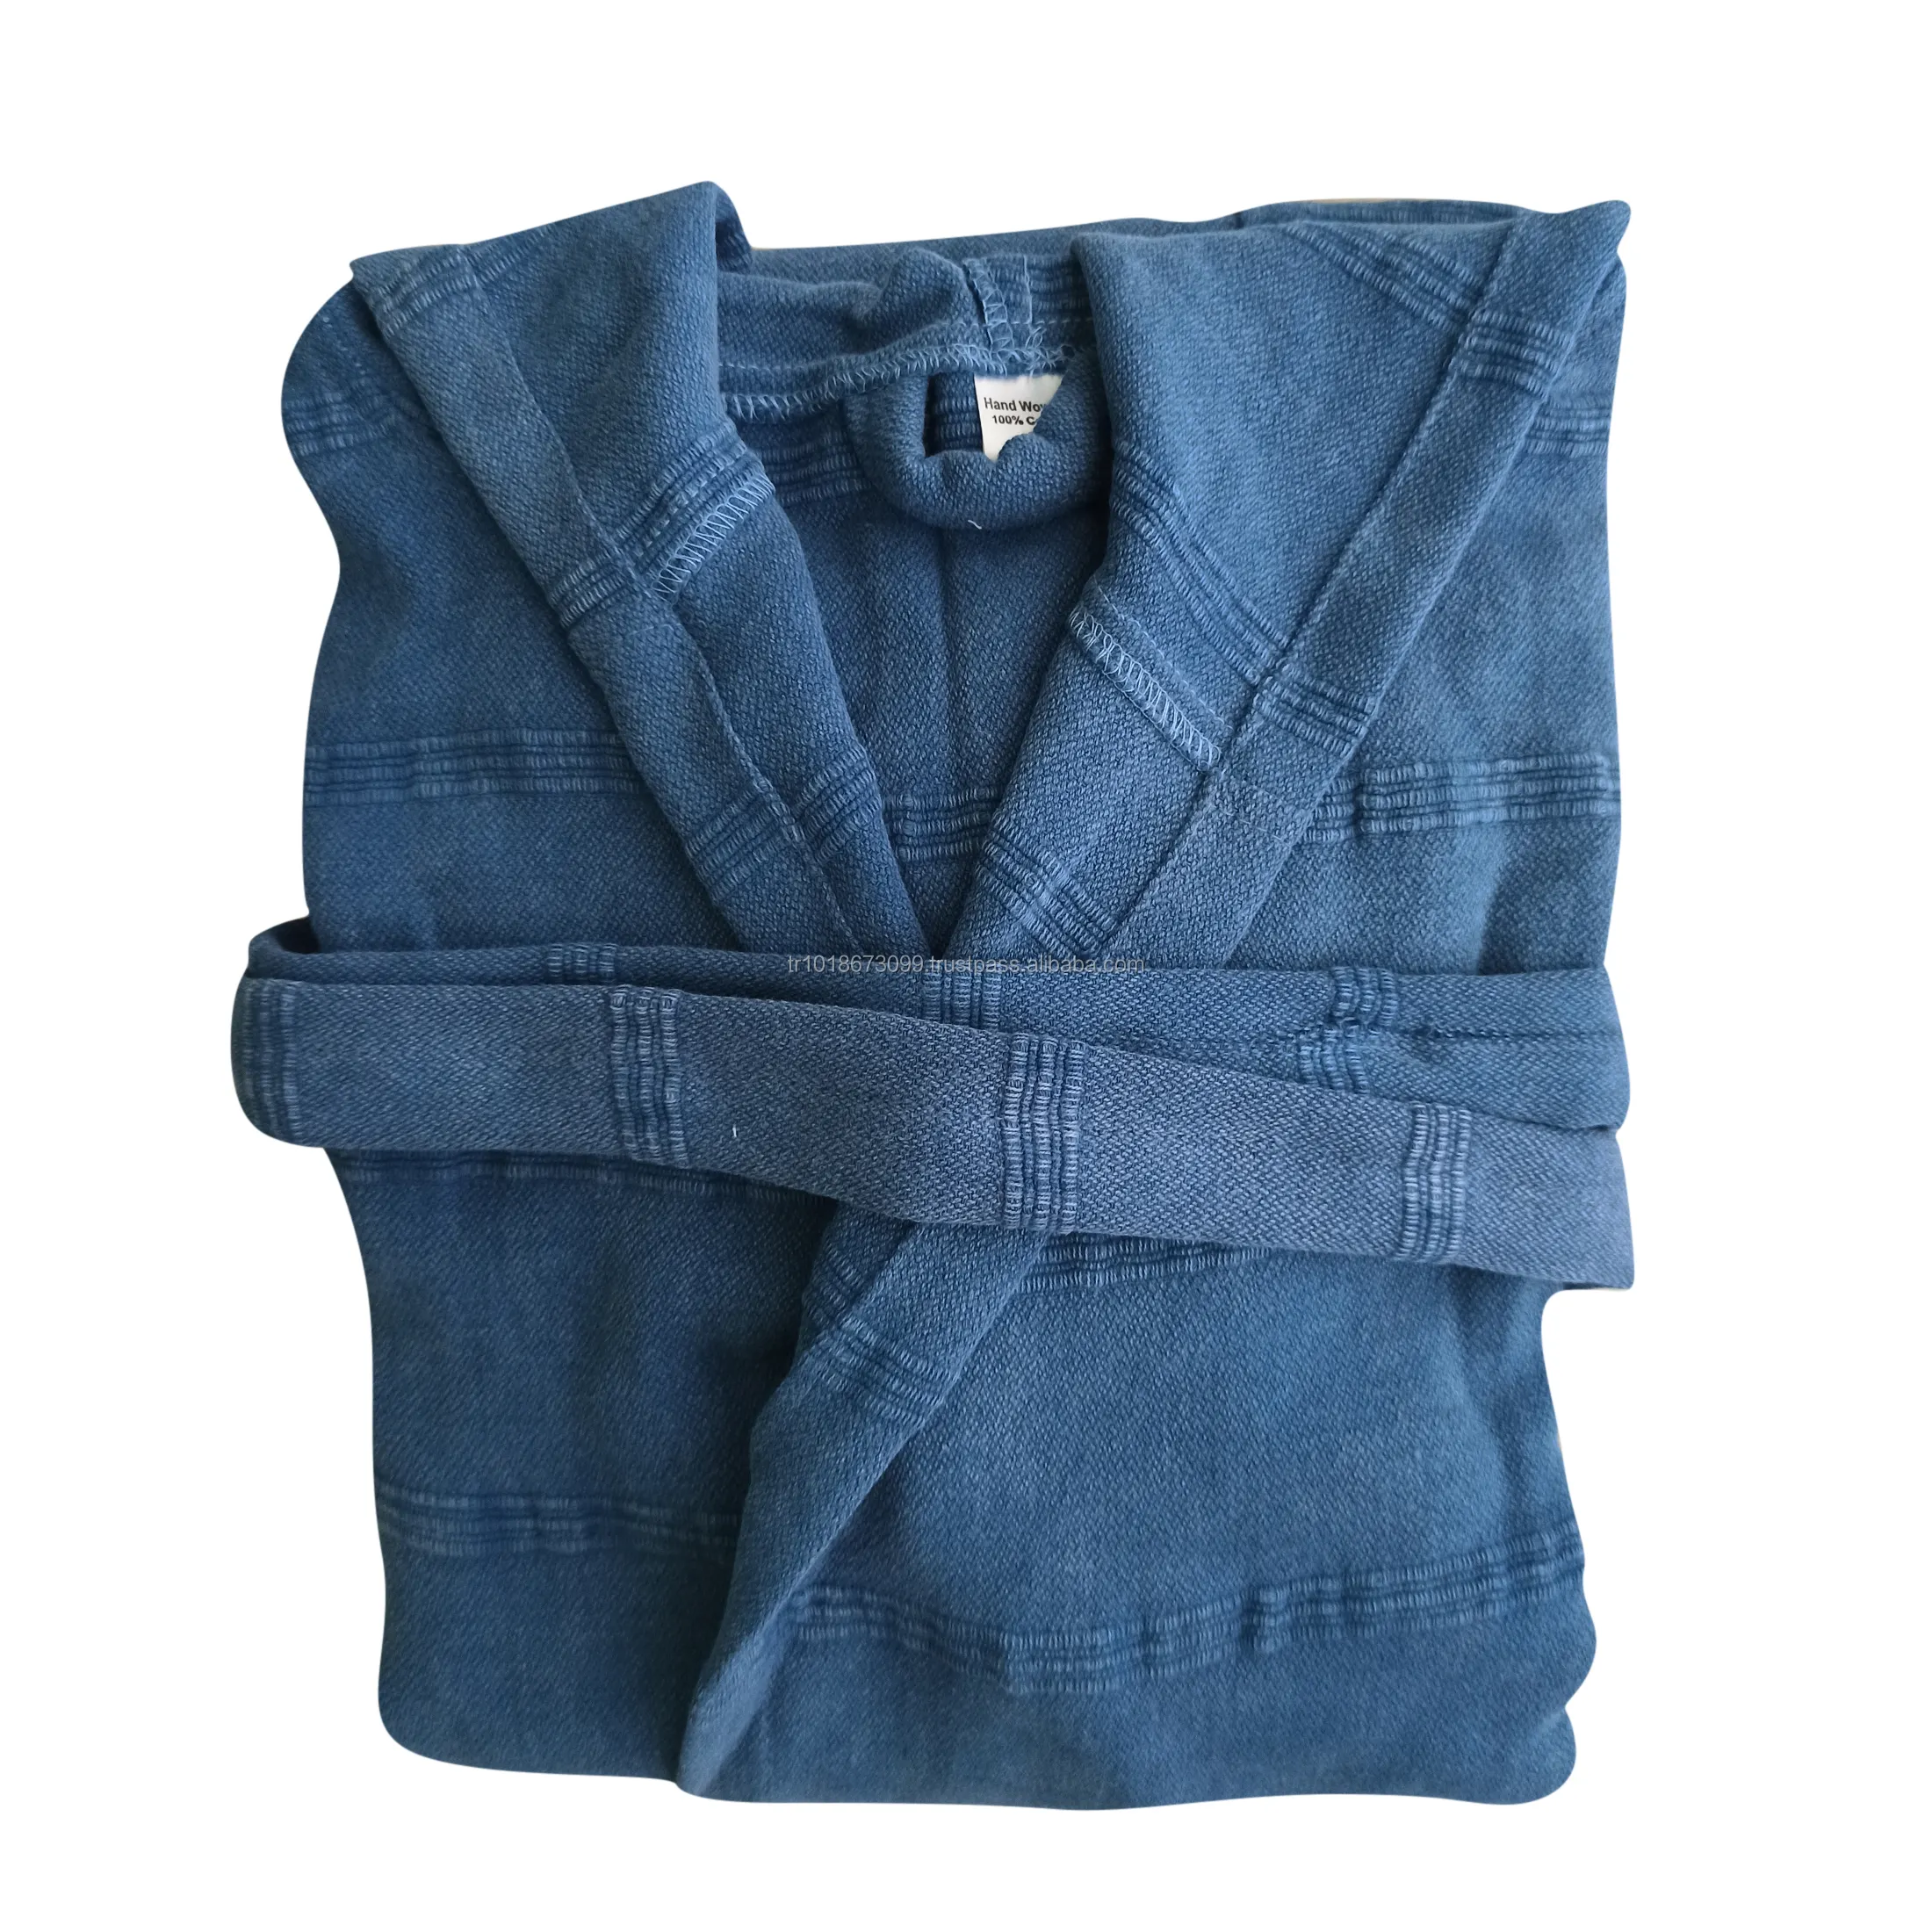 Халаты Stonewash, хлопковый халат для женщин и мужчин, Сделано в Турции, дышащая ткань, легкий бестселлер, турецкие халаты